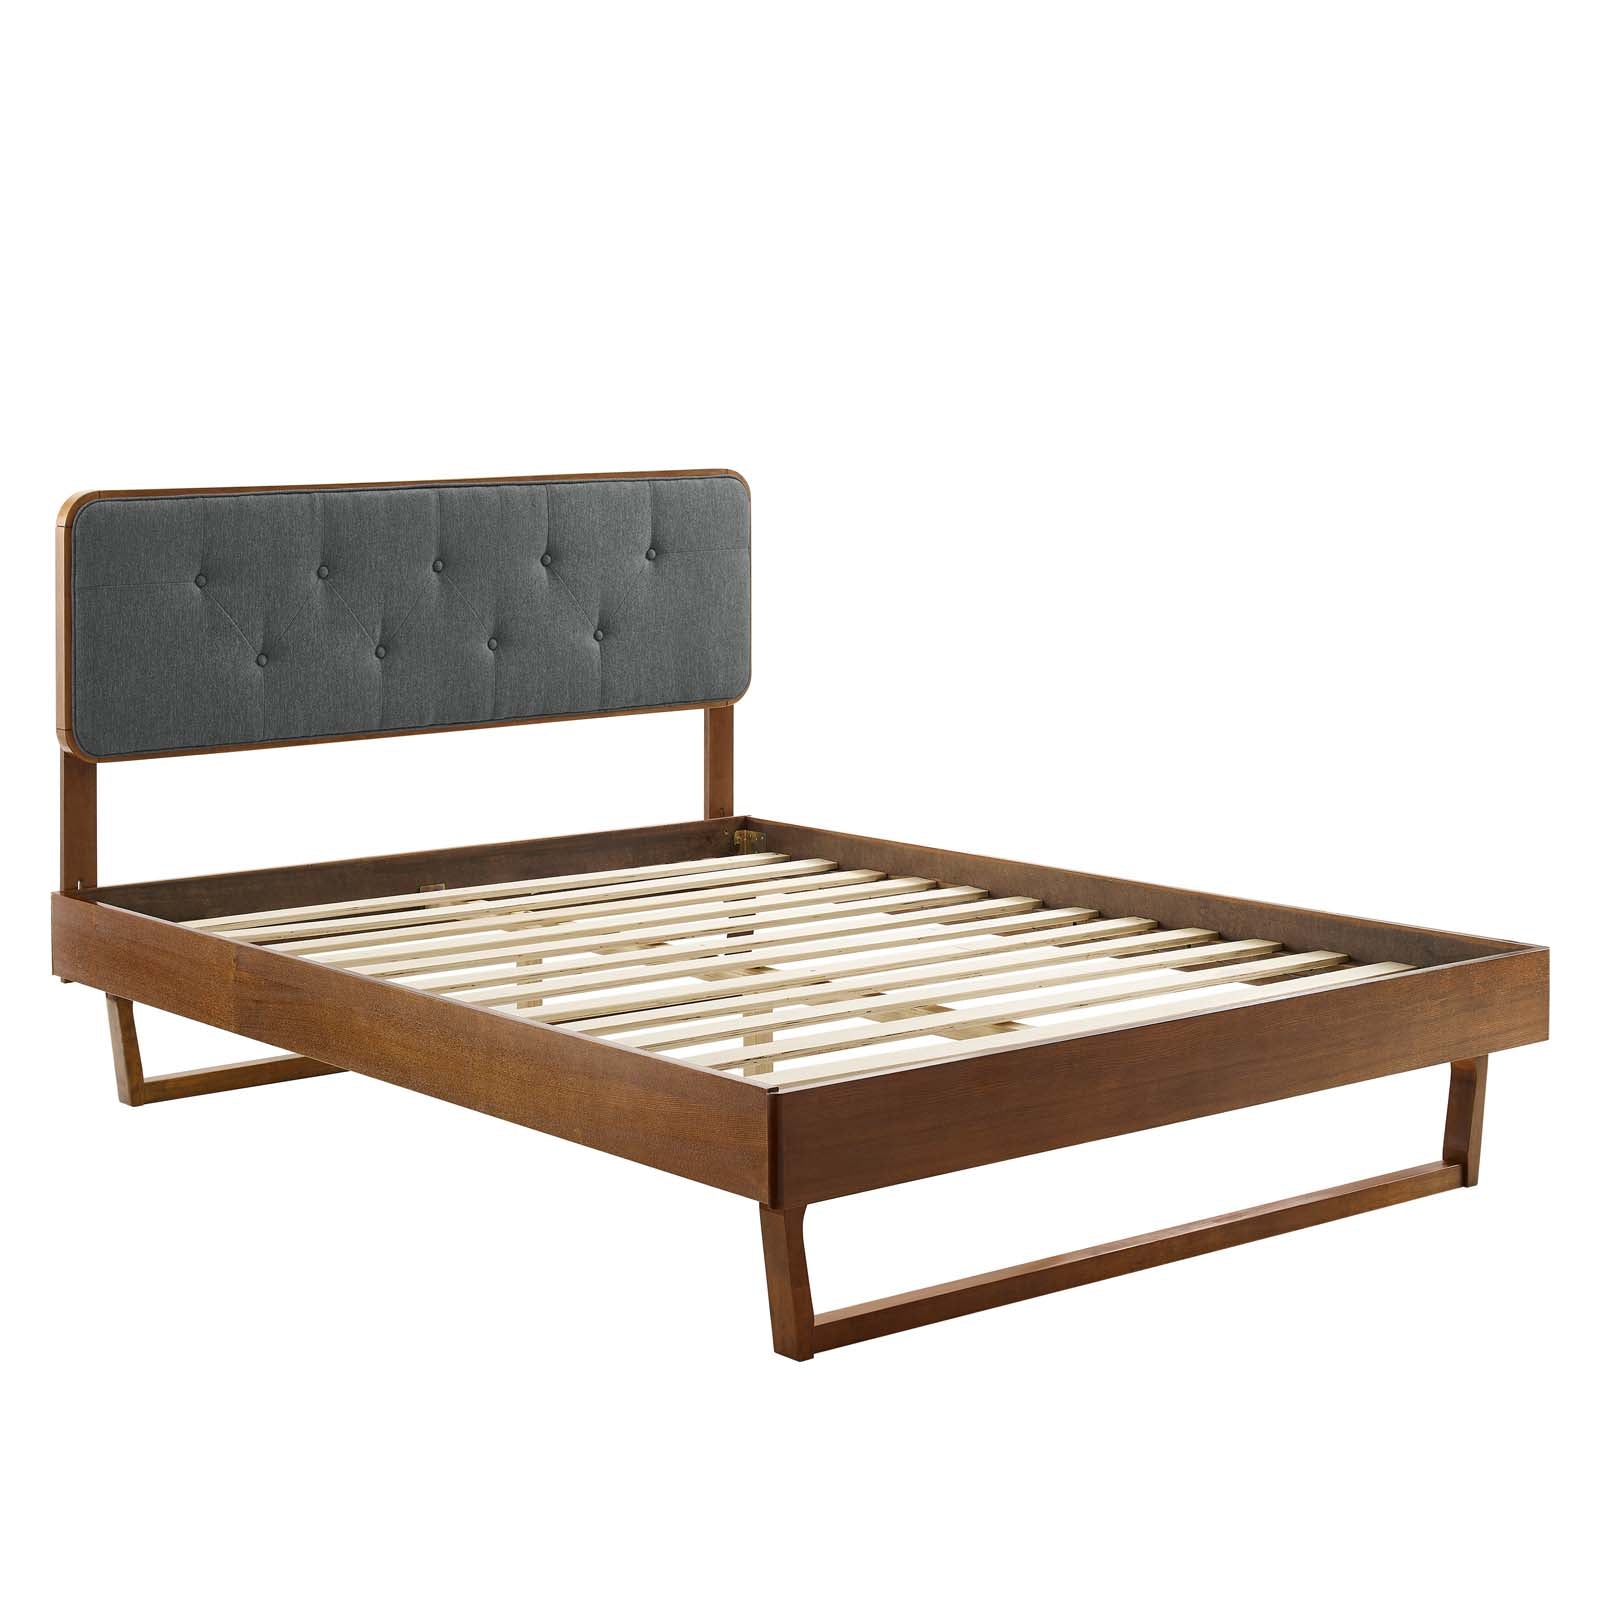 Bridgette King Wood Platform Bed With Angular Frame